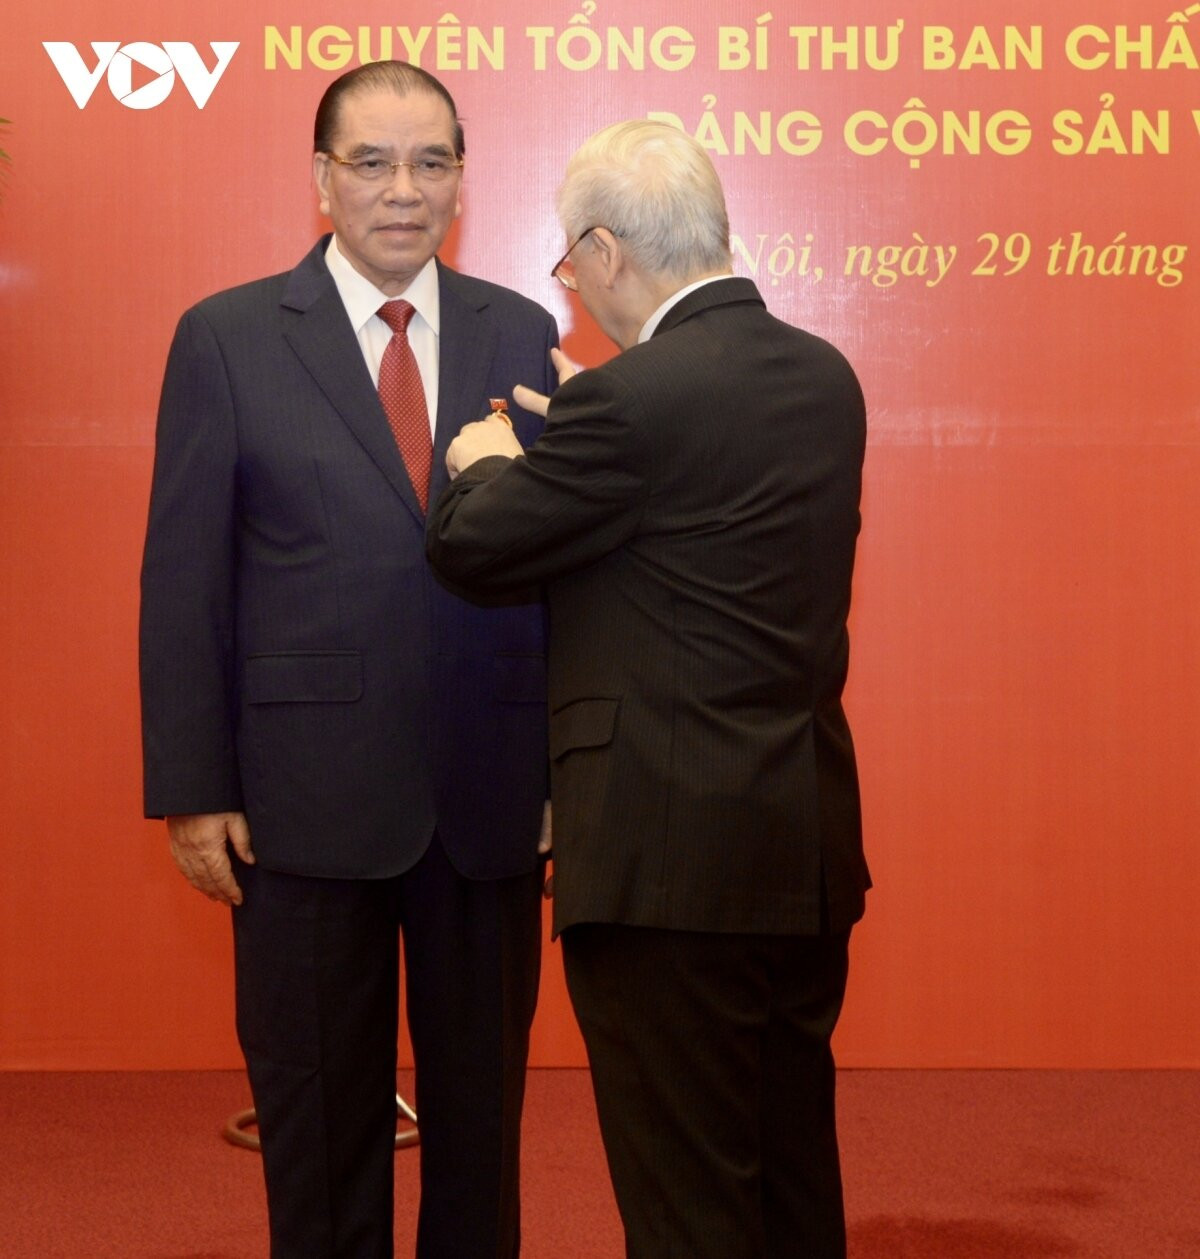 Tổng Bí thư Nguyễn Phú Trọng trao Huy hiệu 60 năm tuổi Đảng cho Nguyên Tổng Bí thư Nông Đức Mạnh.